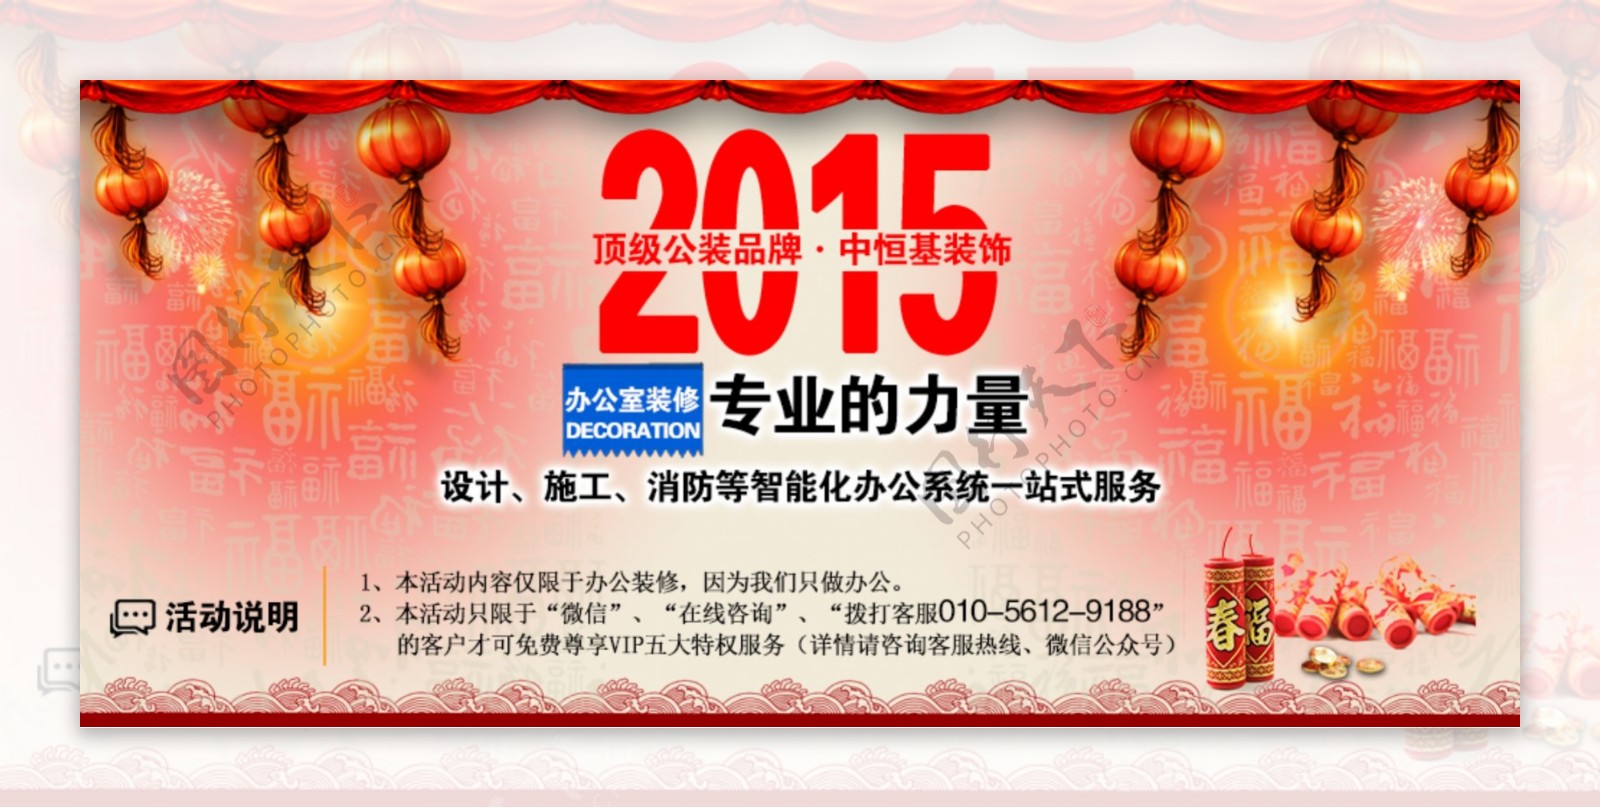 2015新年网站banner素材